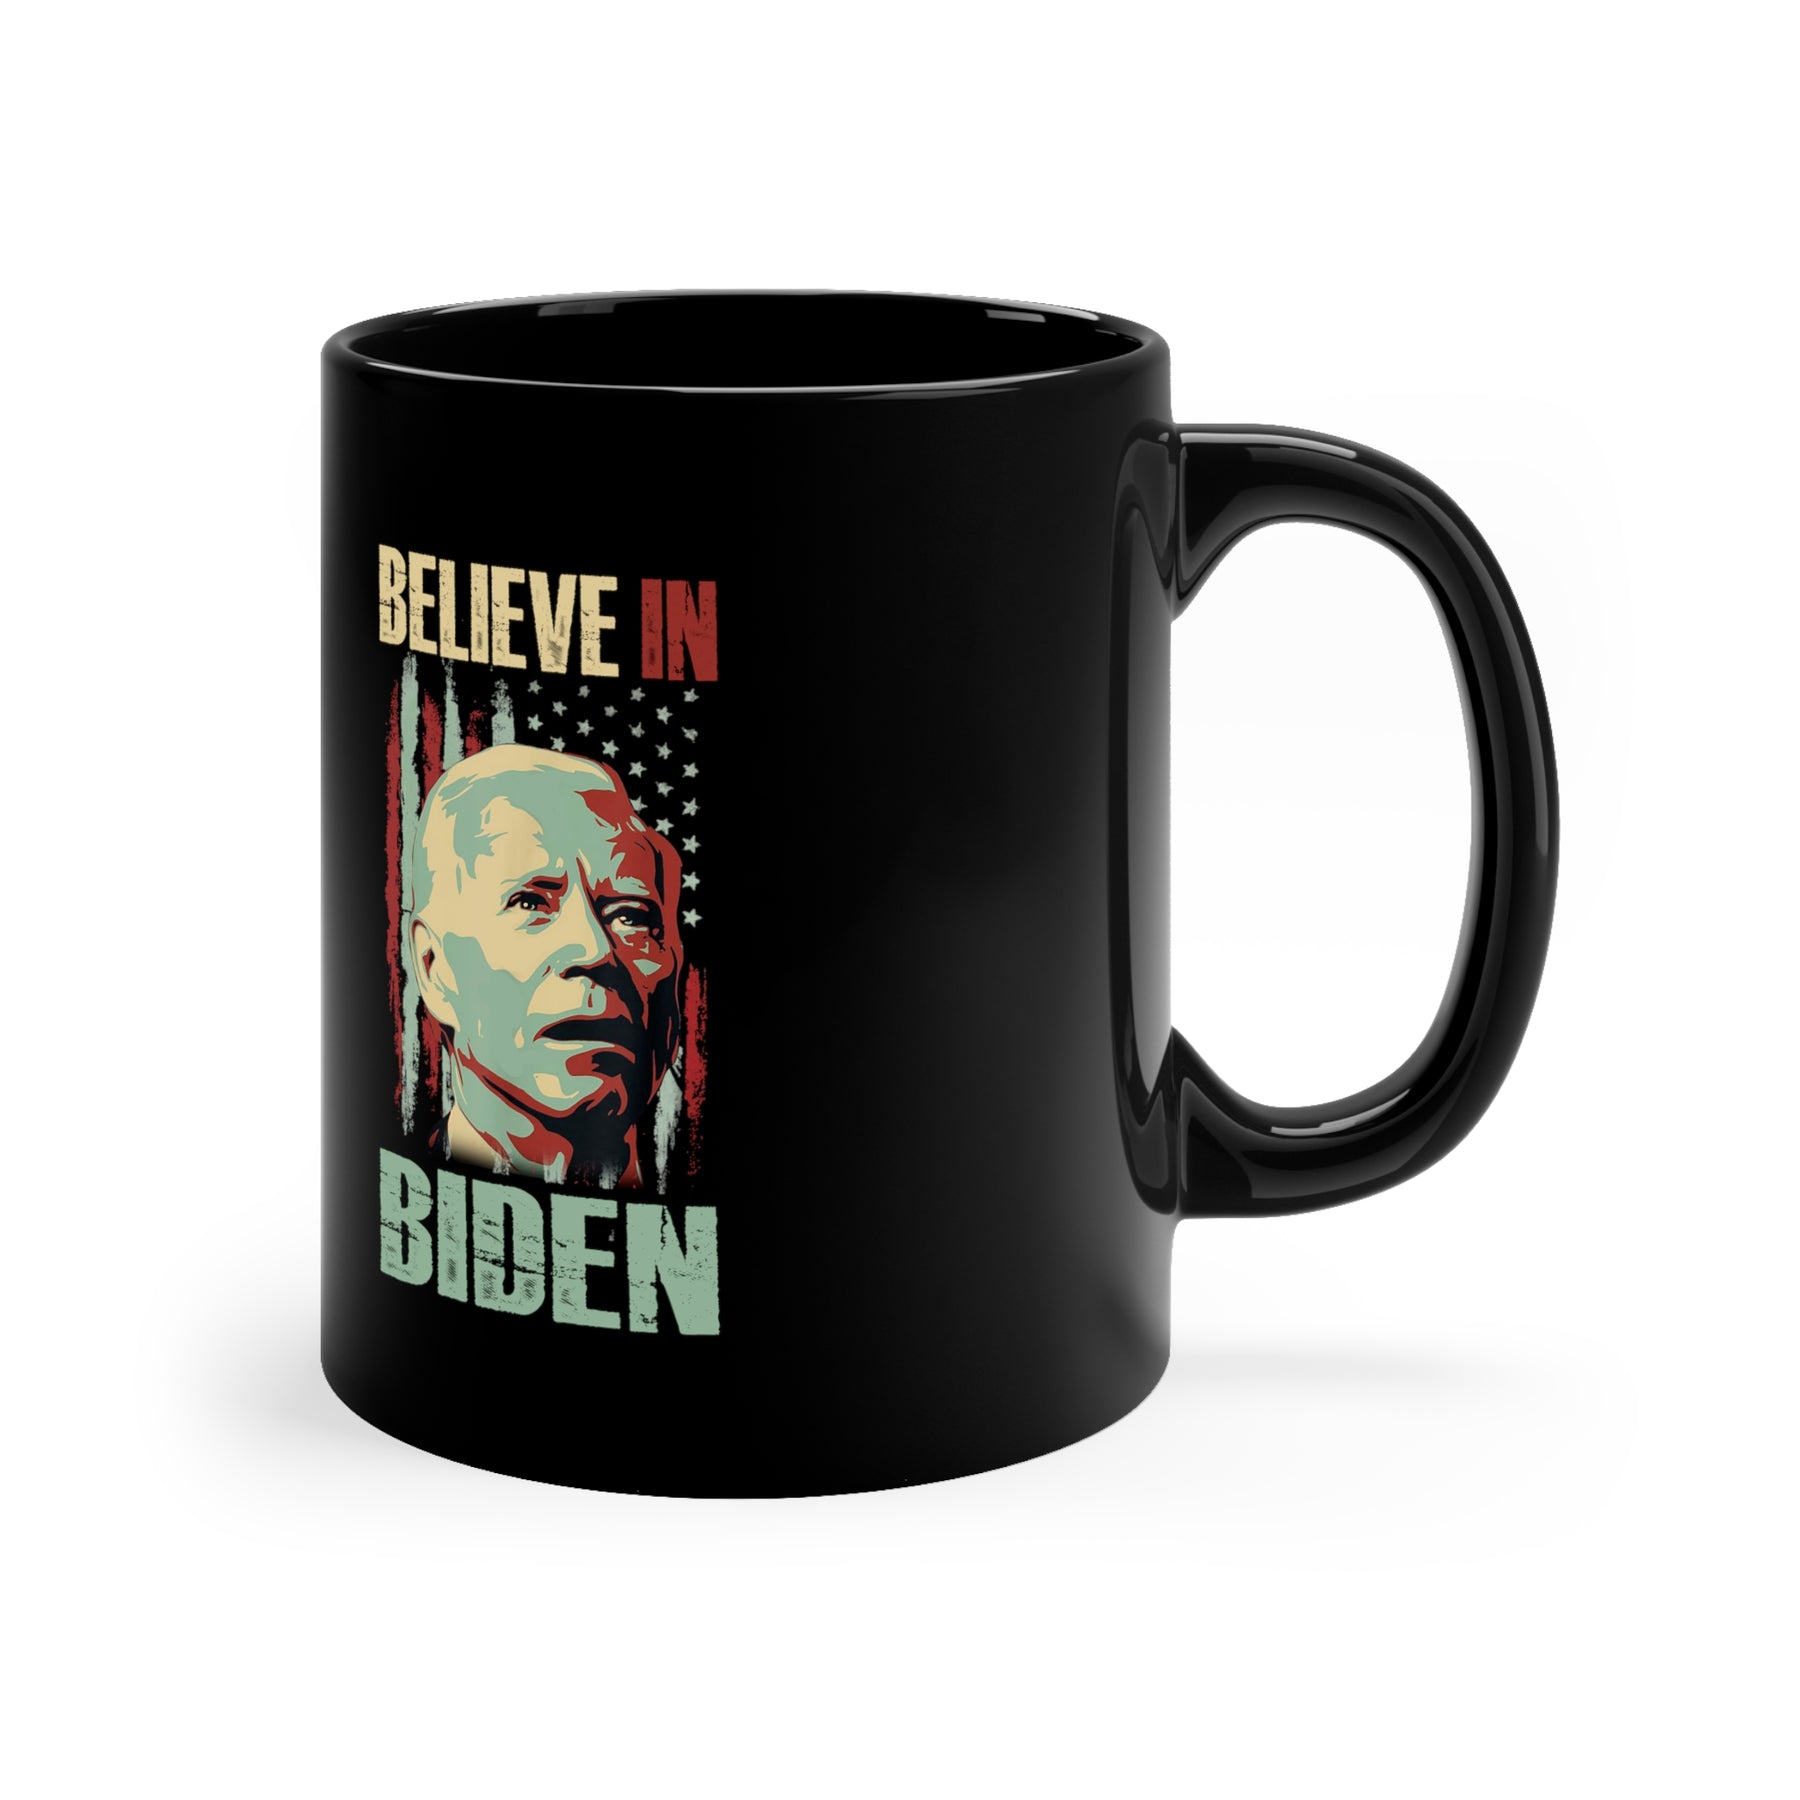 Believe in Biden - Mug